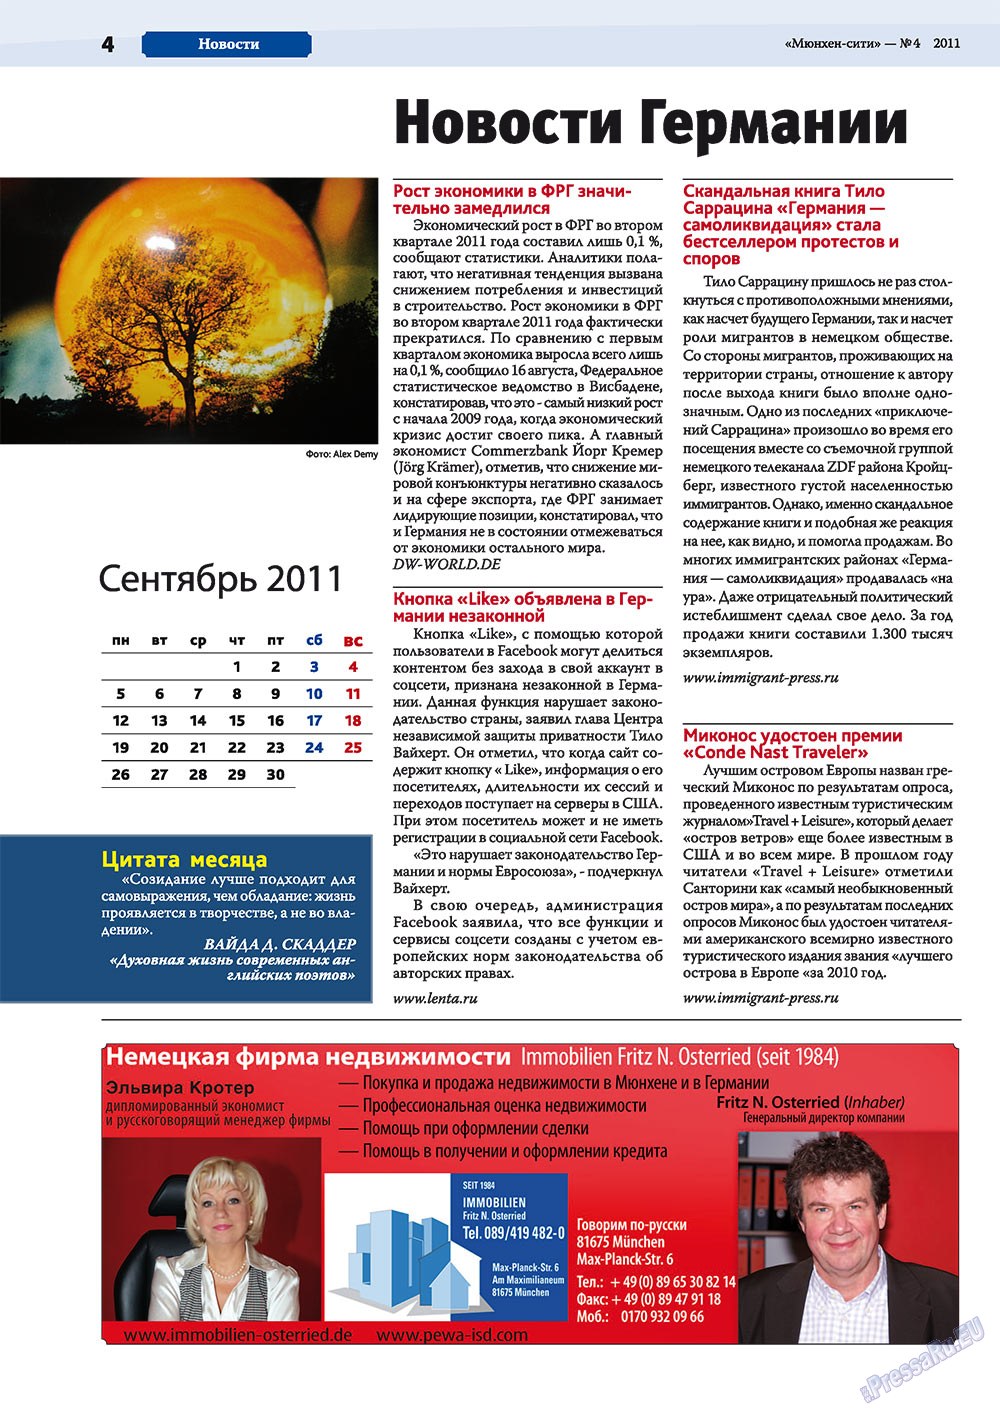 Мюнхен-сити (журнал). 2011 год, номер 4, стр. 4